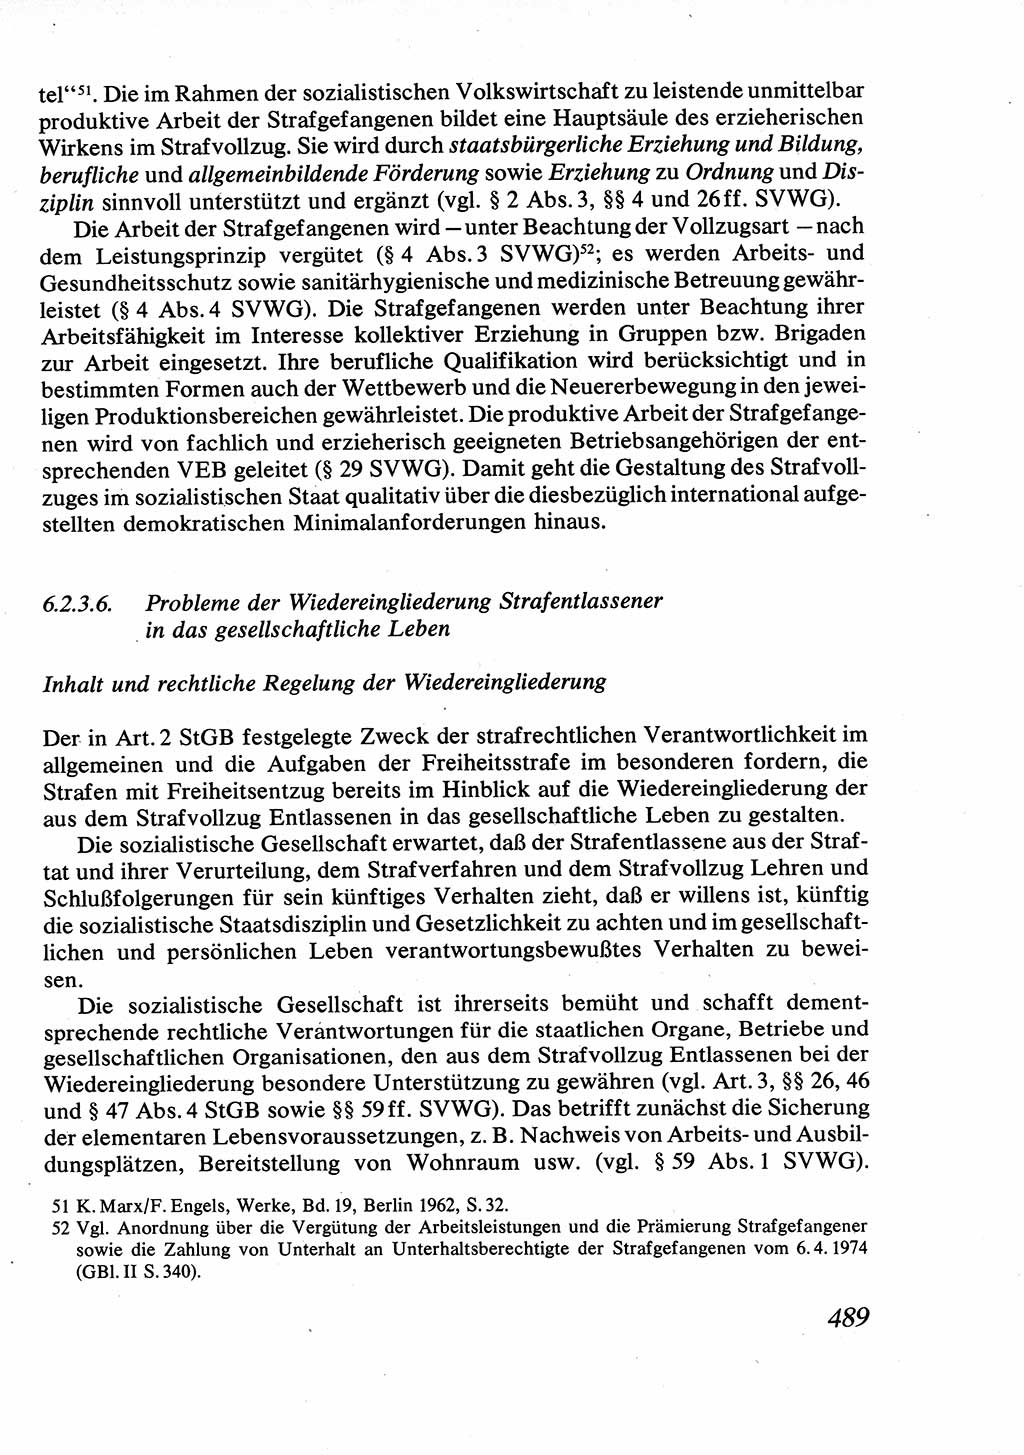 Strafrecht [Deutsche Demokratische Republik (DDR)], Allgemeiner Teil, Lehrbuch 1976, Seite 489 (Strafr. DDR AT Lb. 1976, S. 489)